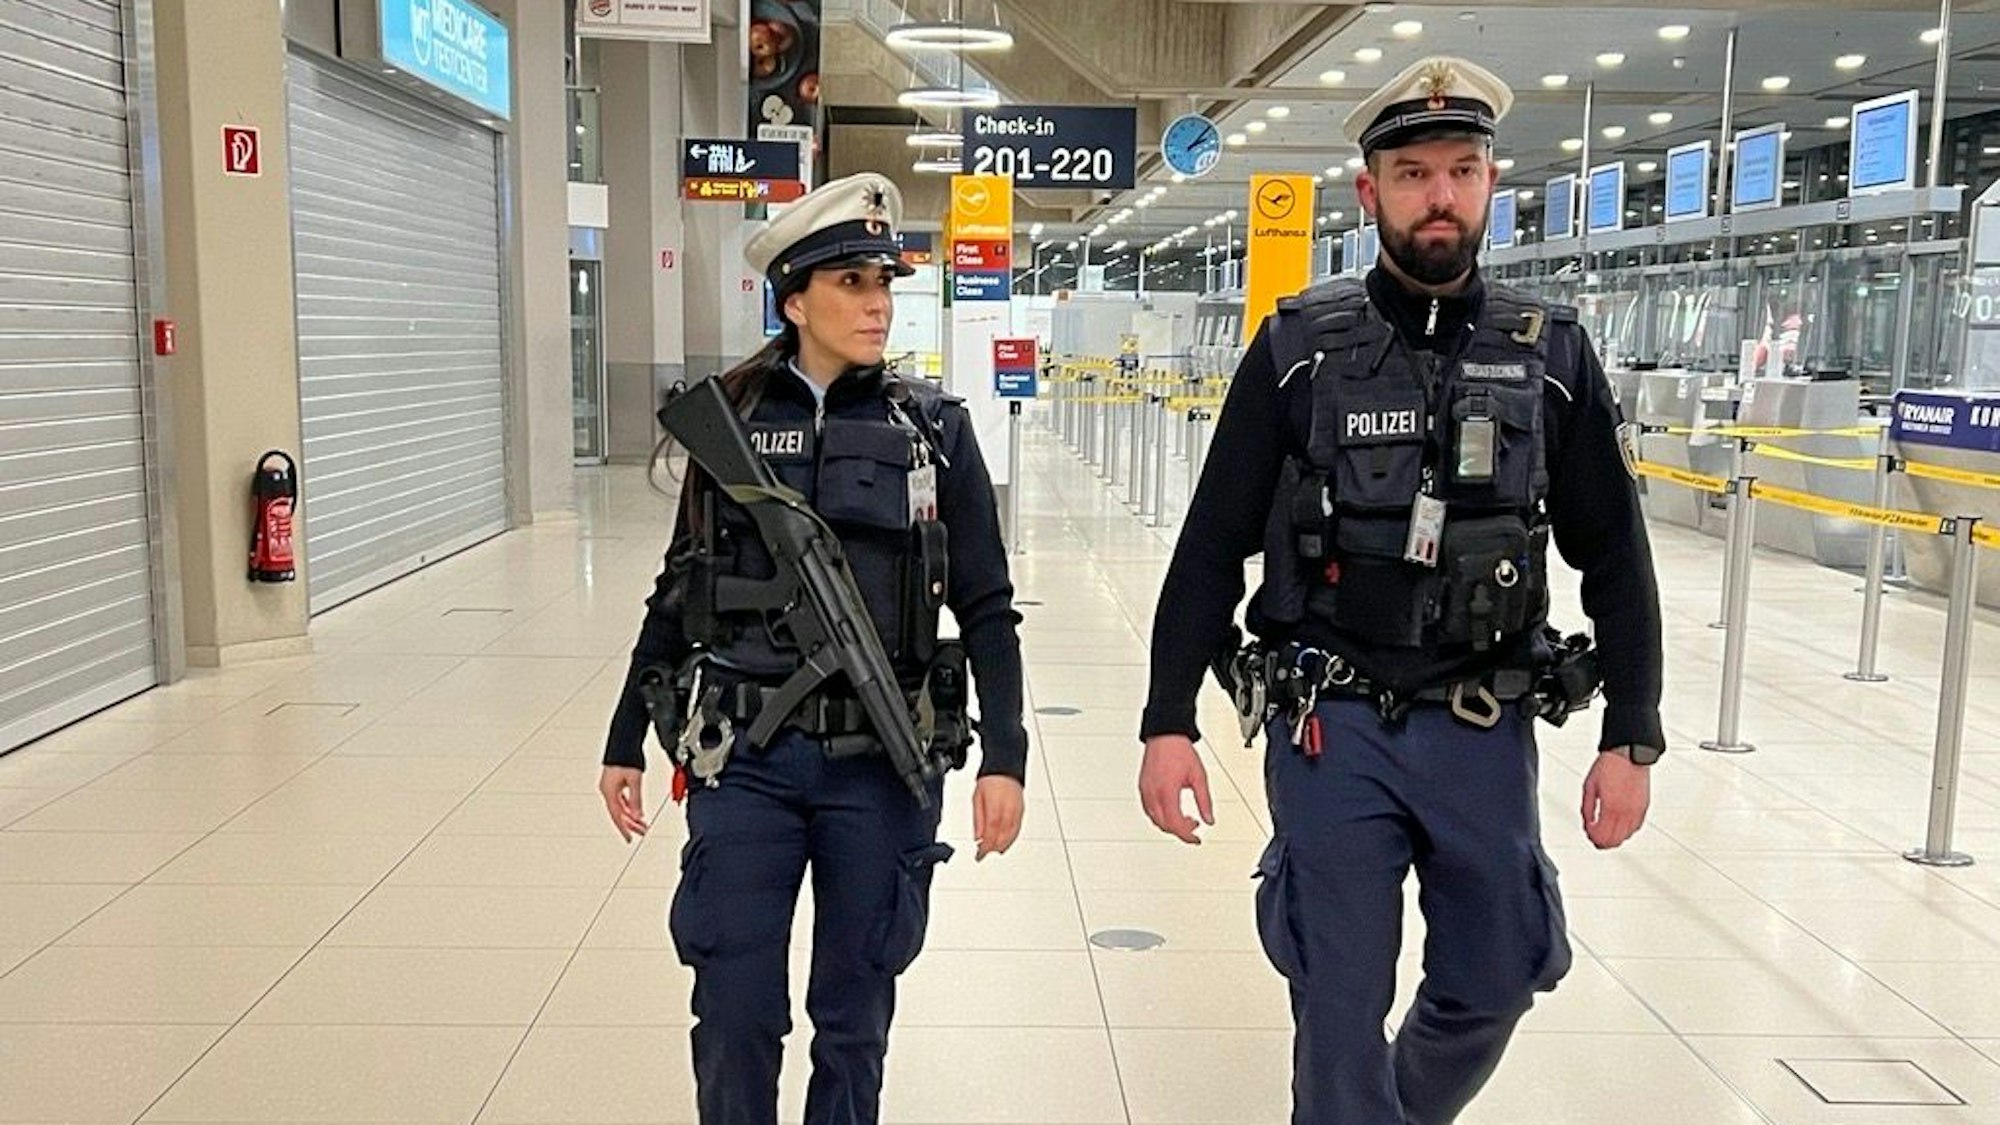 Yagmur Özkaya und Marc Schmelzer bei ihrem nächtlichen Streifengang durch das Terminal 1